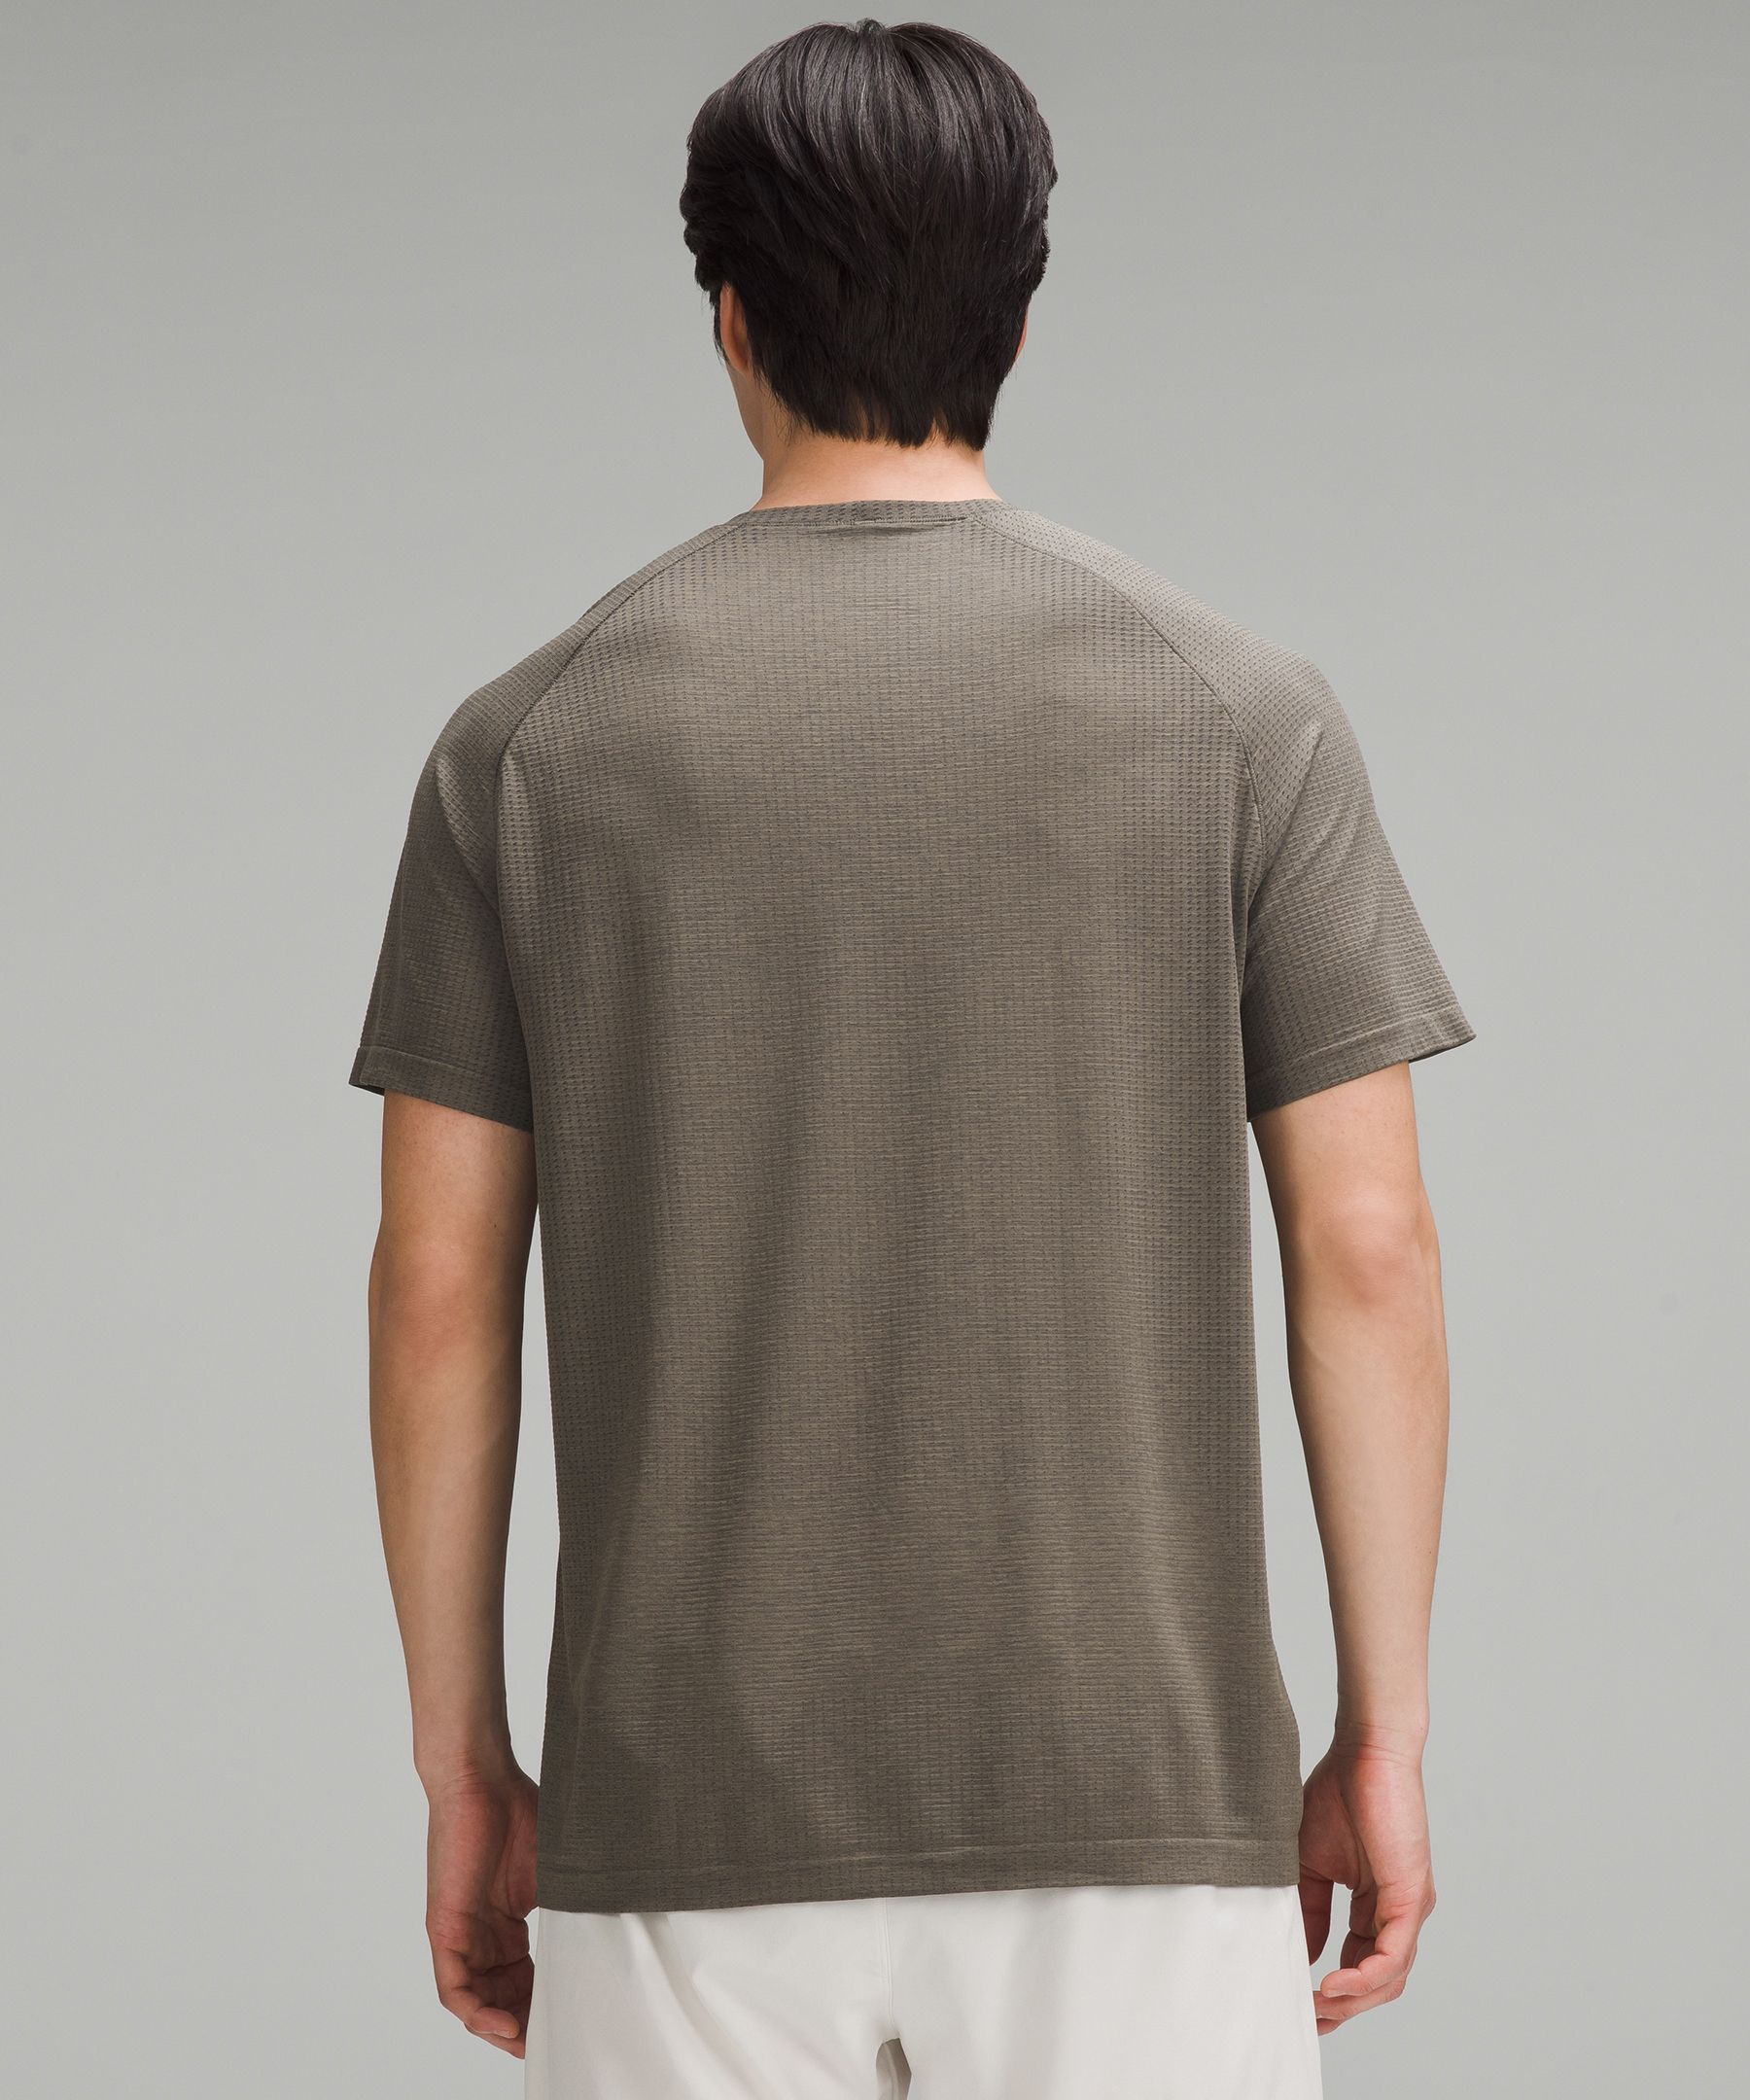 Metal Vent Tech Short-Sleeve Shirt, Men's Short Sleeve Shirts & Tee's